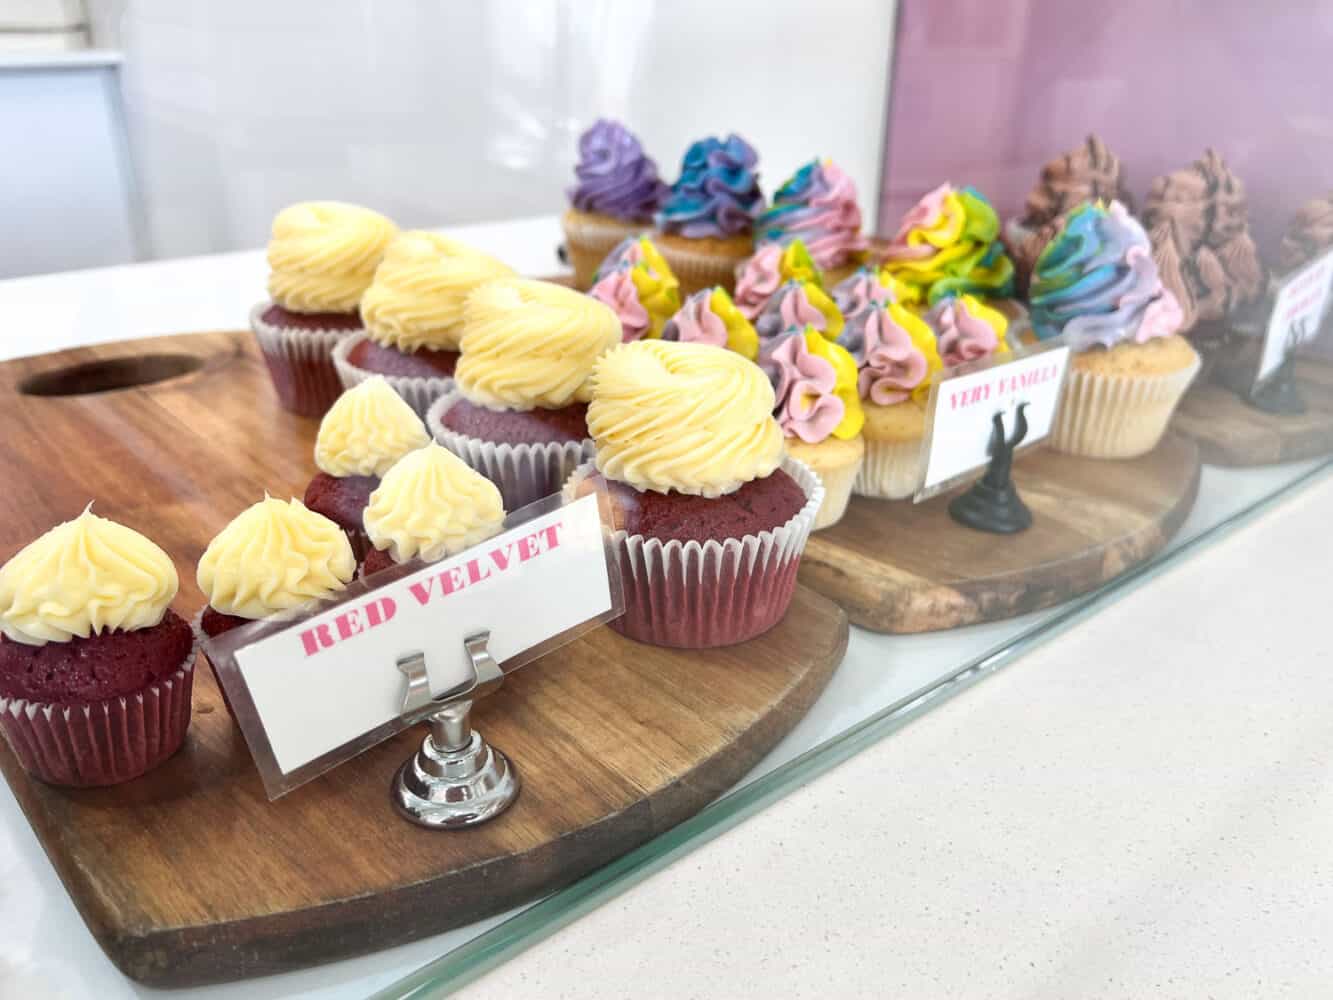 Cupcakes at Cocoa Spice Bakery, Caloundra, Queensland, Australia